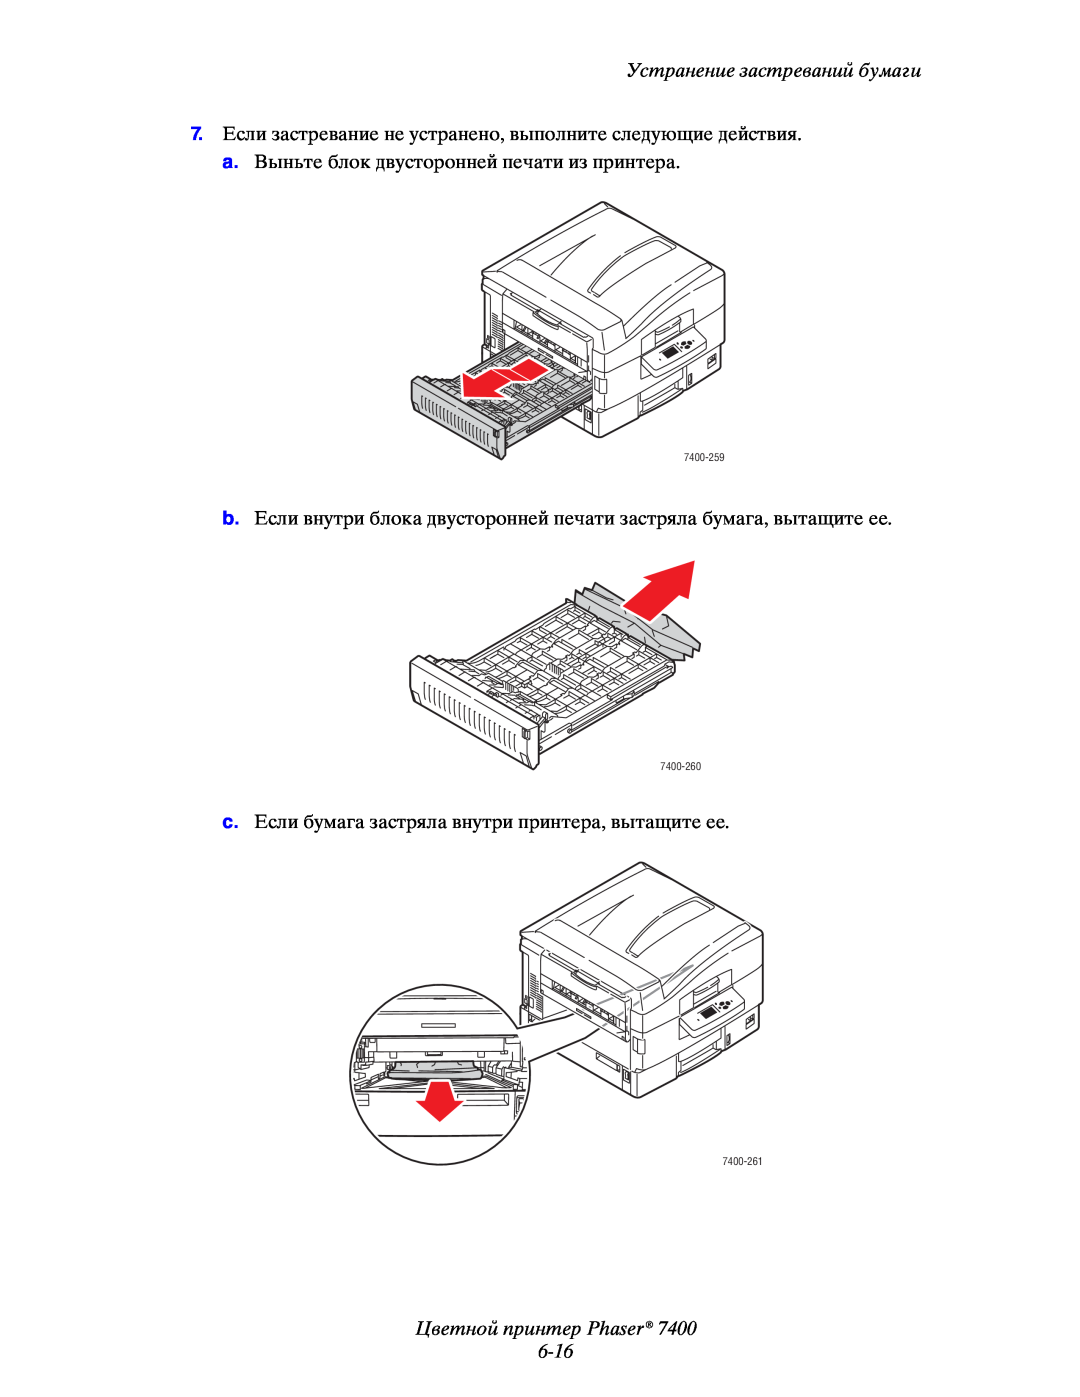 Xerox 7400 manual Цветной принтер Phaser 6-16, Устранение застреваний бумаги 